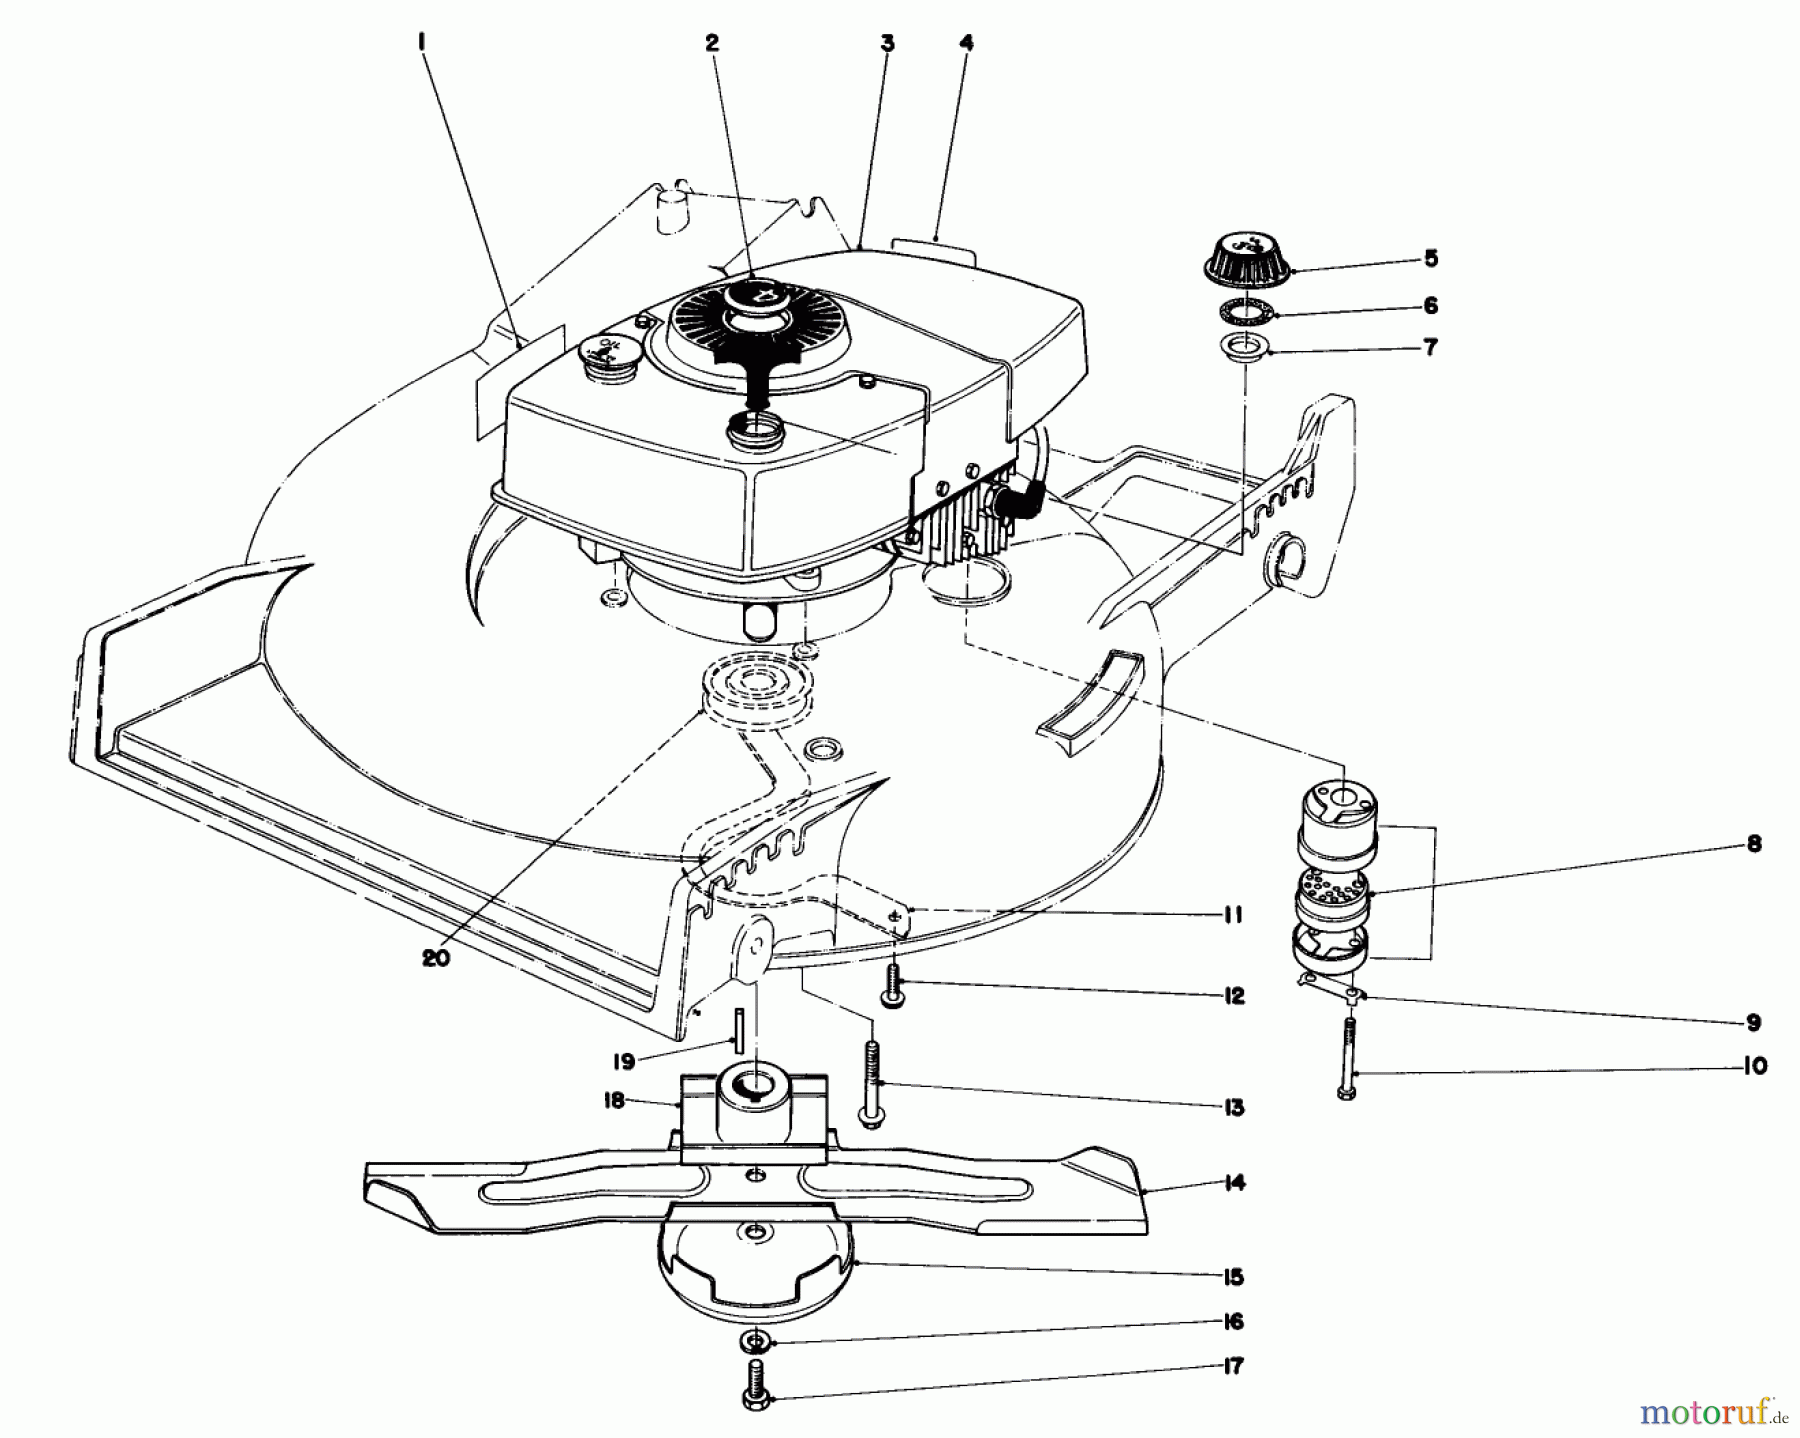  Toro Neu Mowers, Walk-Behind Seite 1 20775 - Toro Lawnmower, 1979 (9000001-9999999) ENGINE ASSEMBLY